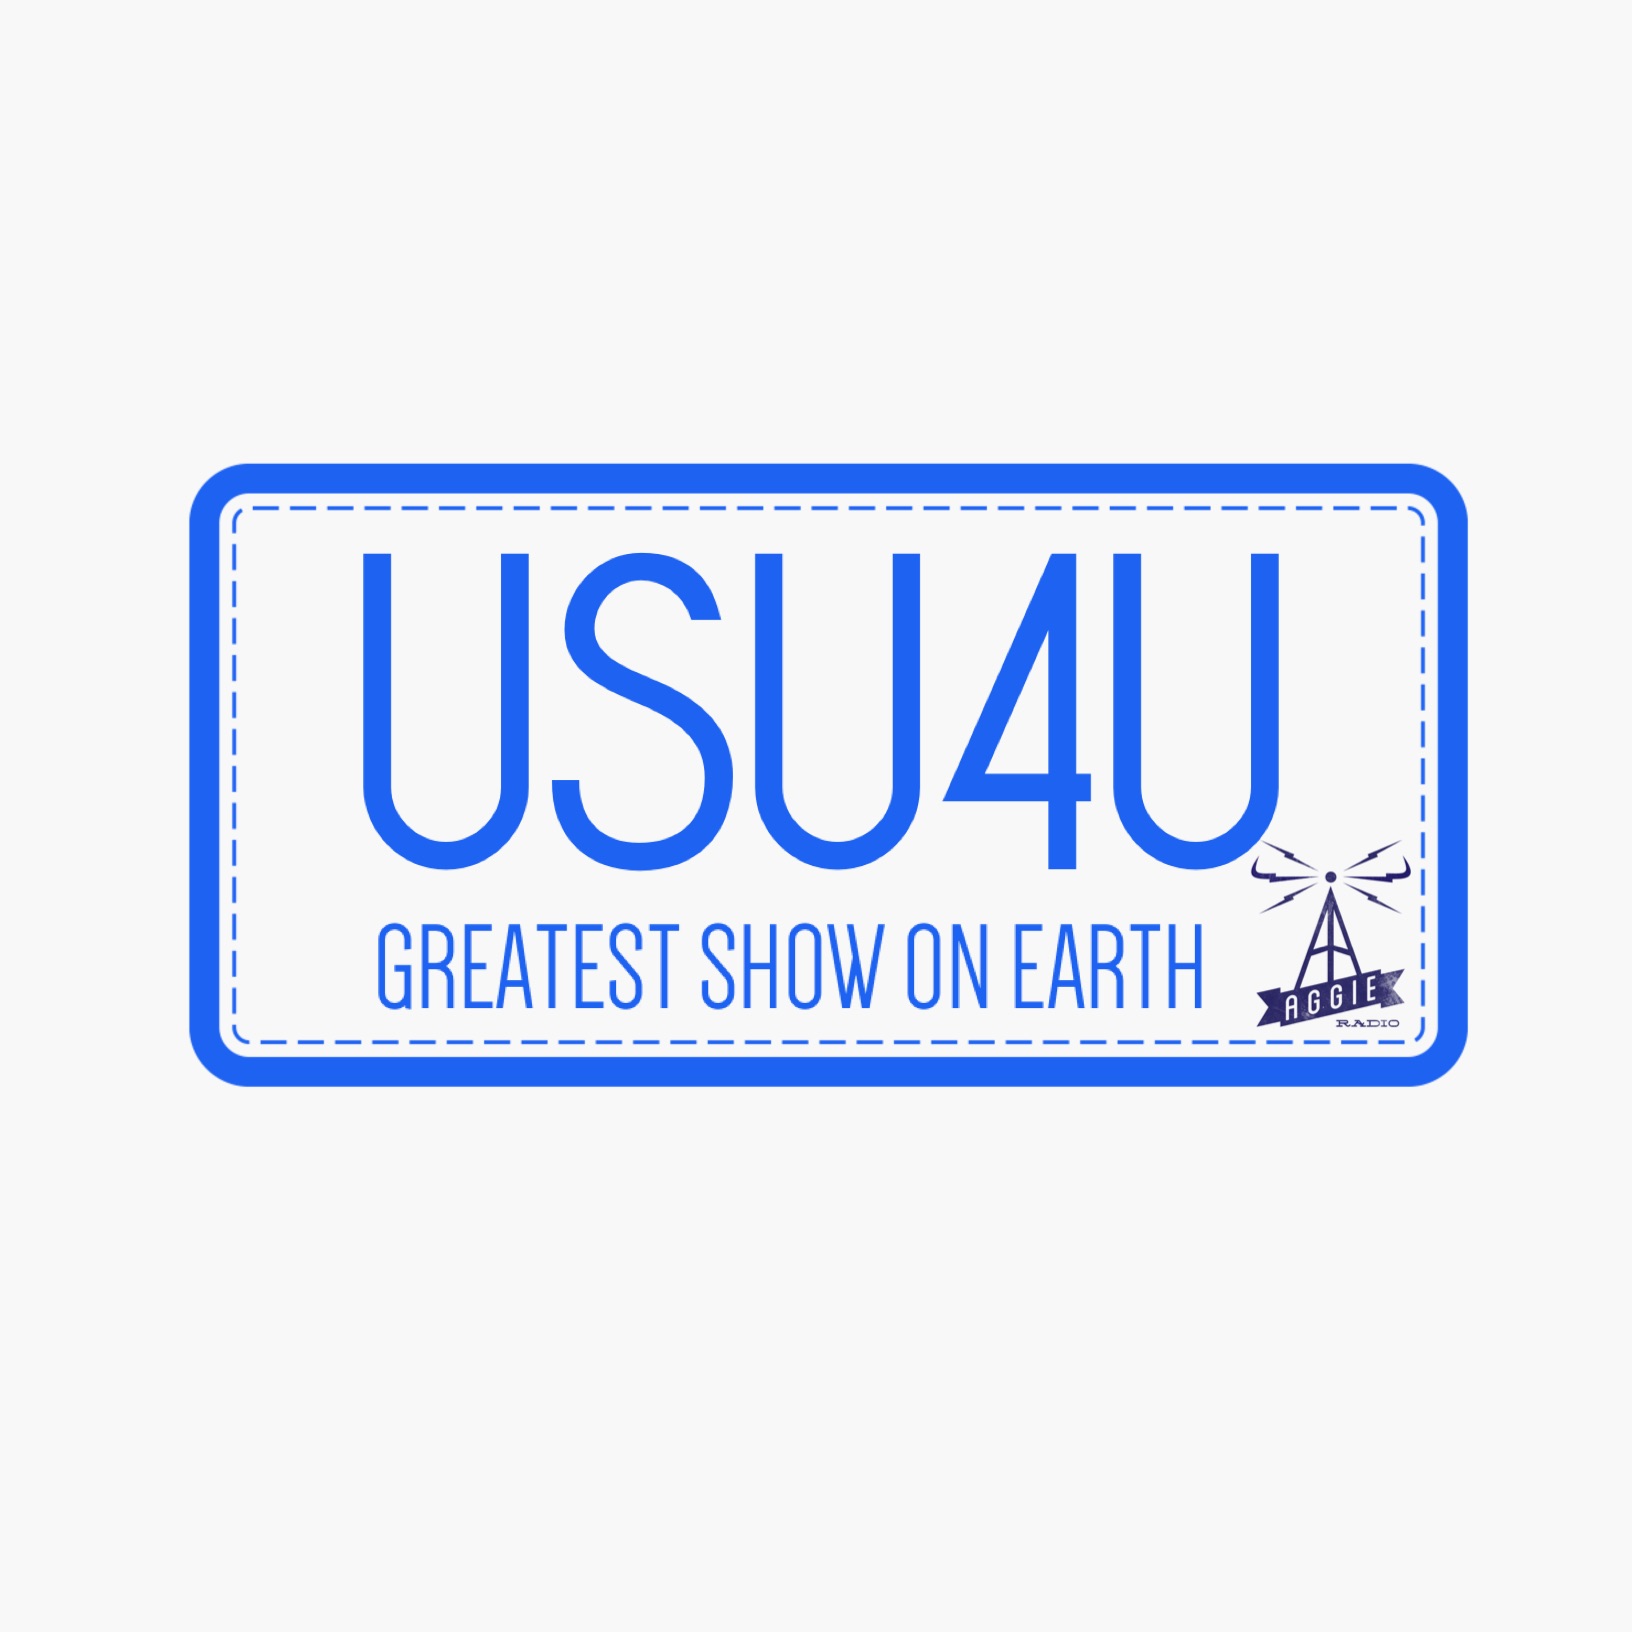 USU4U-10.12.15